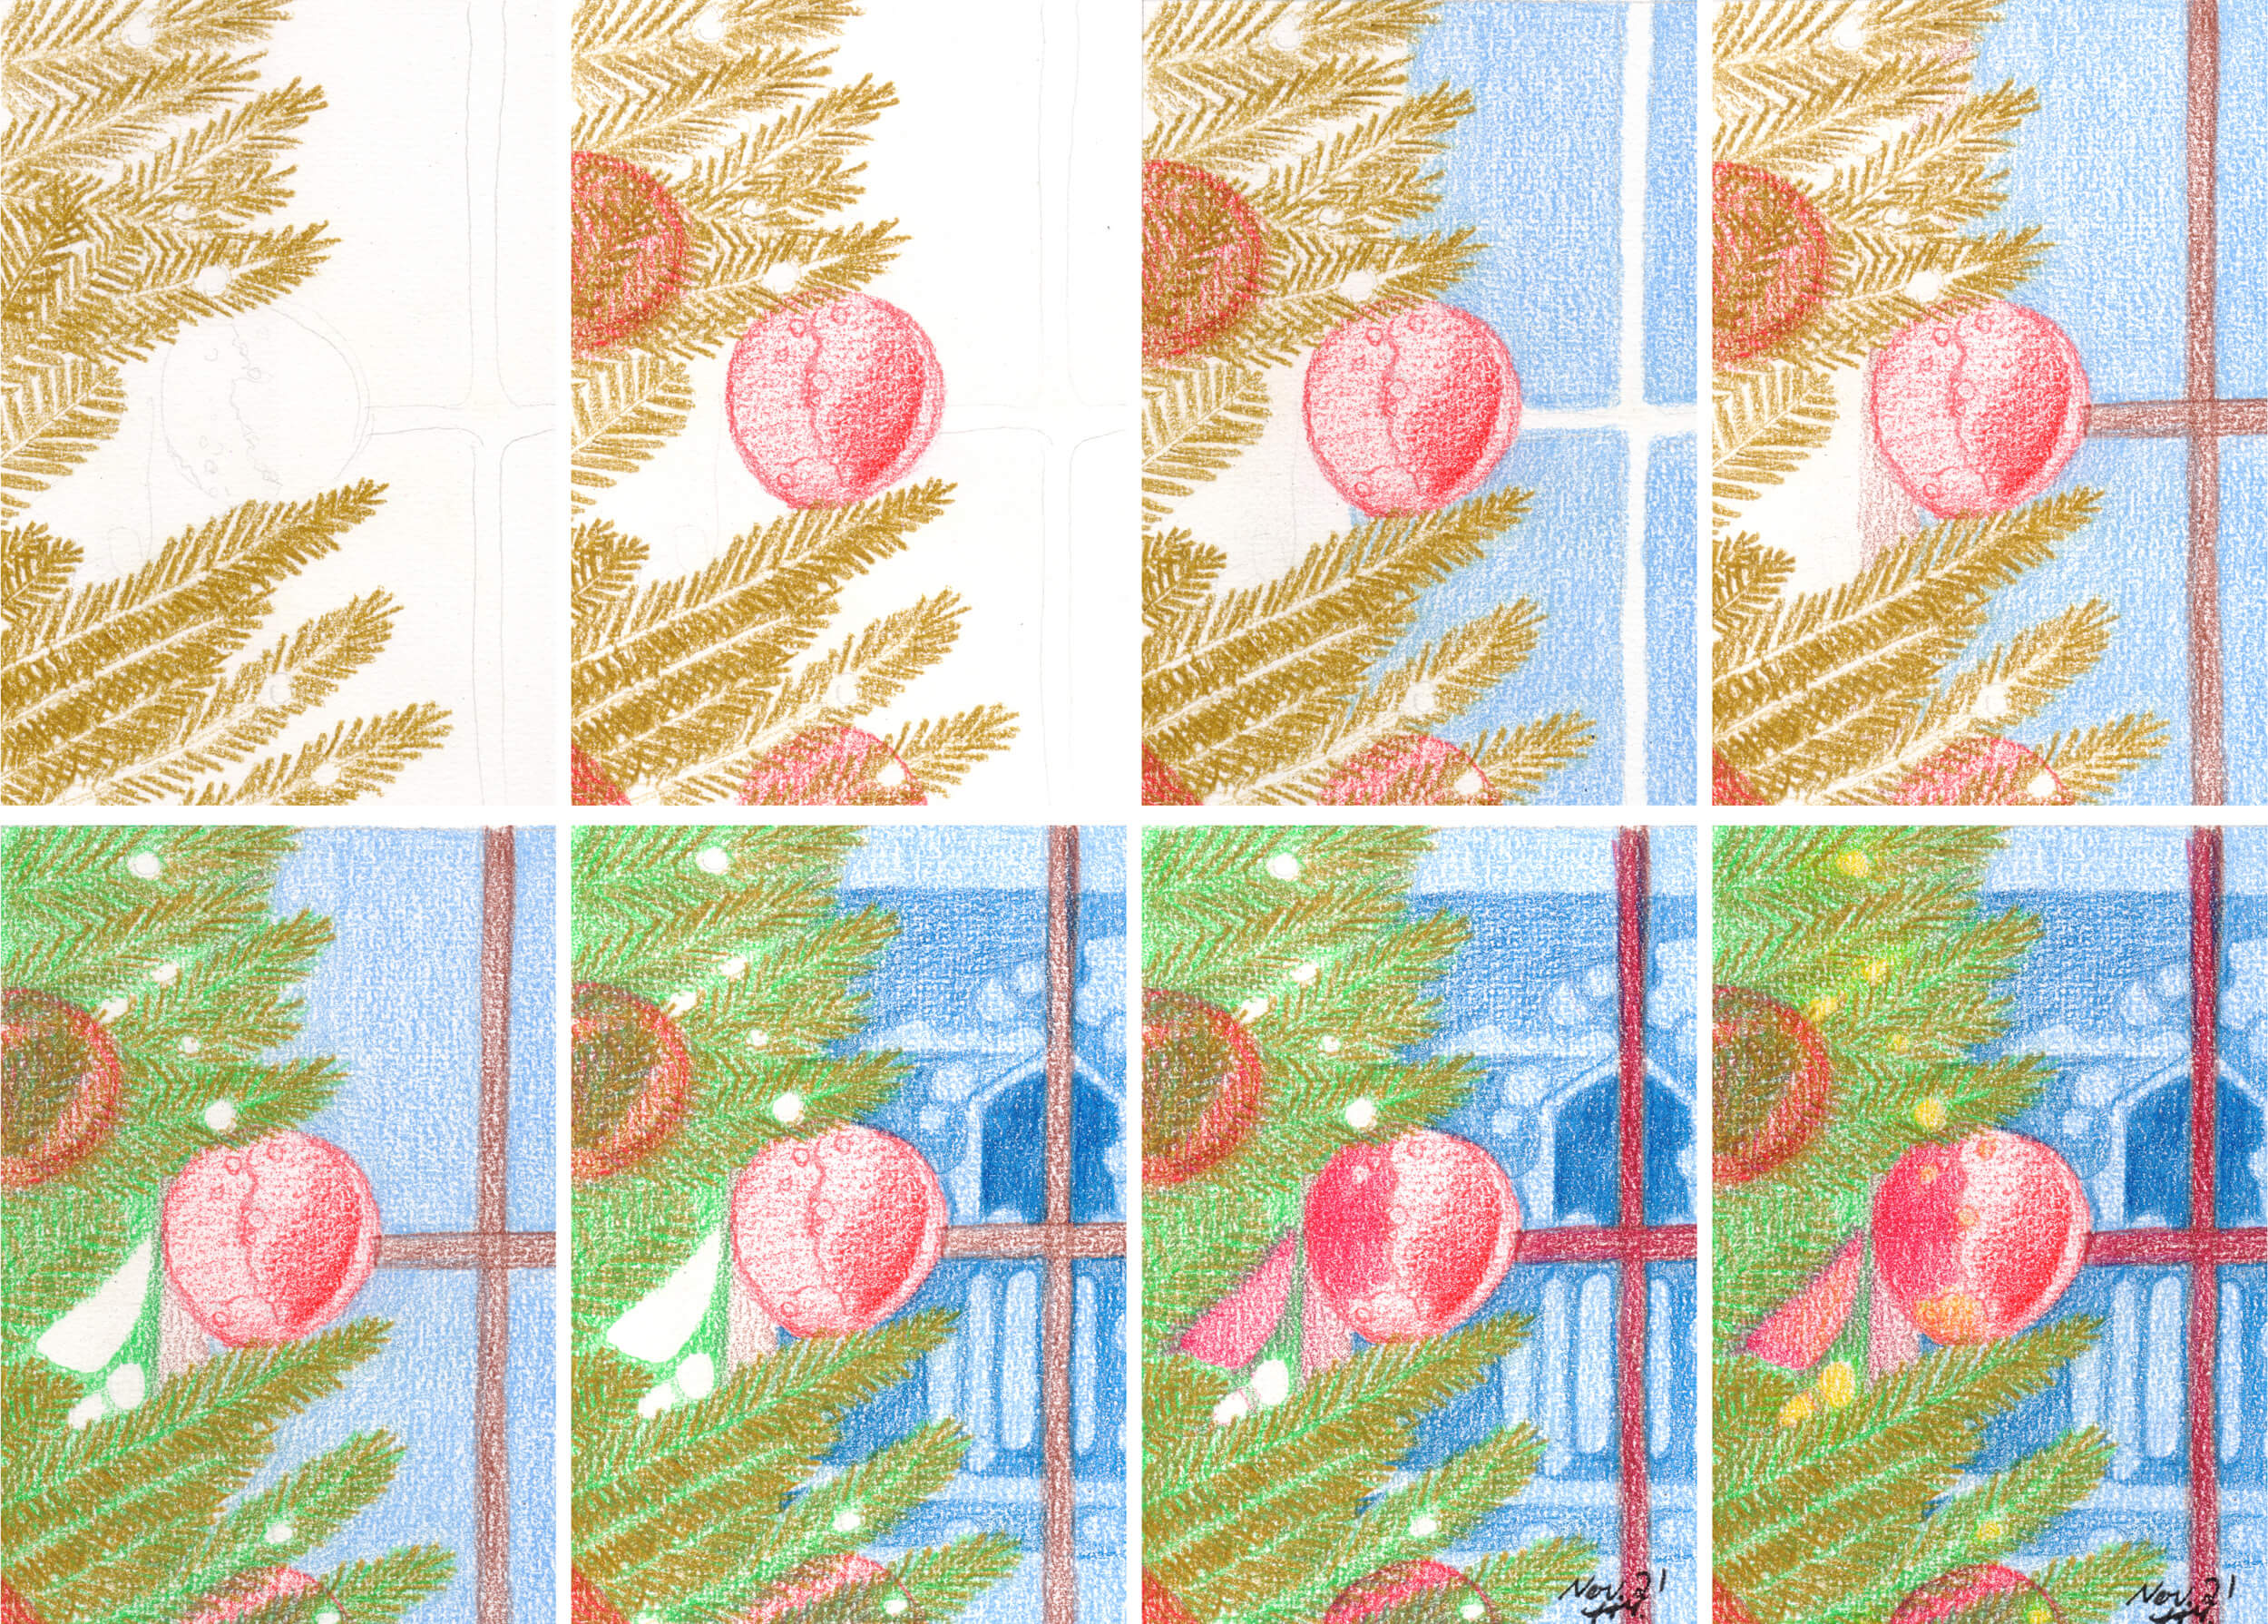 Advent: Weihnachtsbaum am Fenster zeichnen und malen mit Buntstift